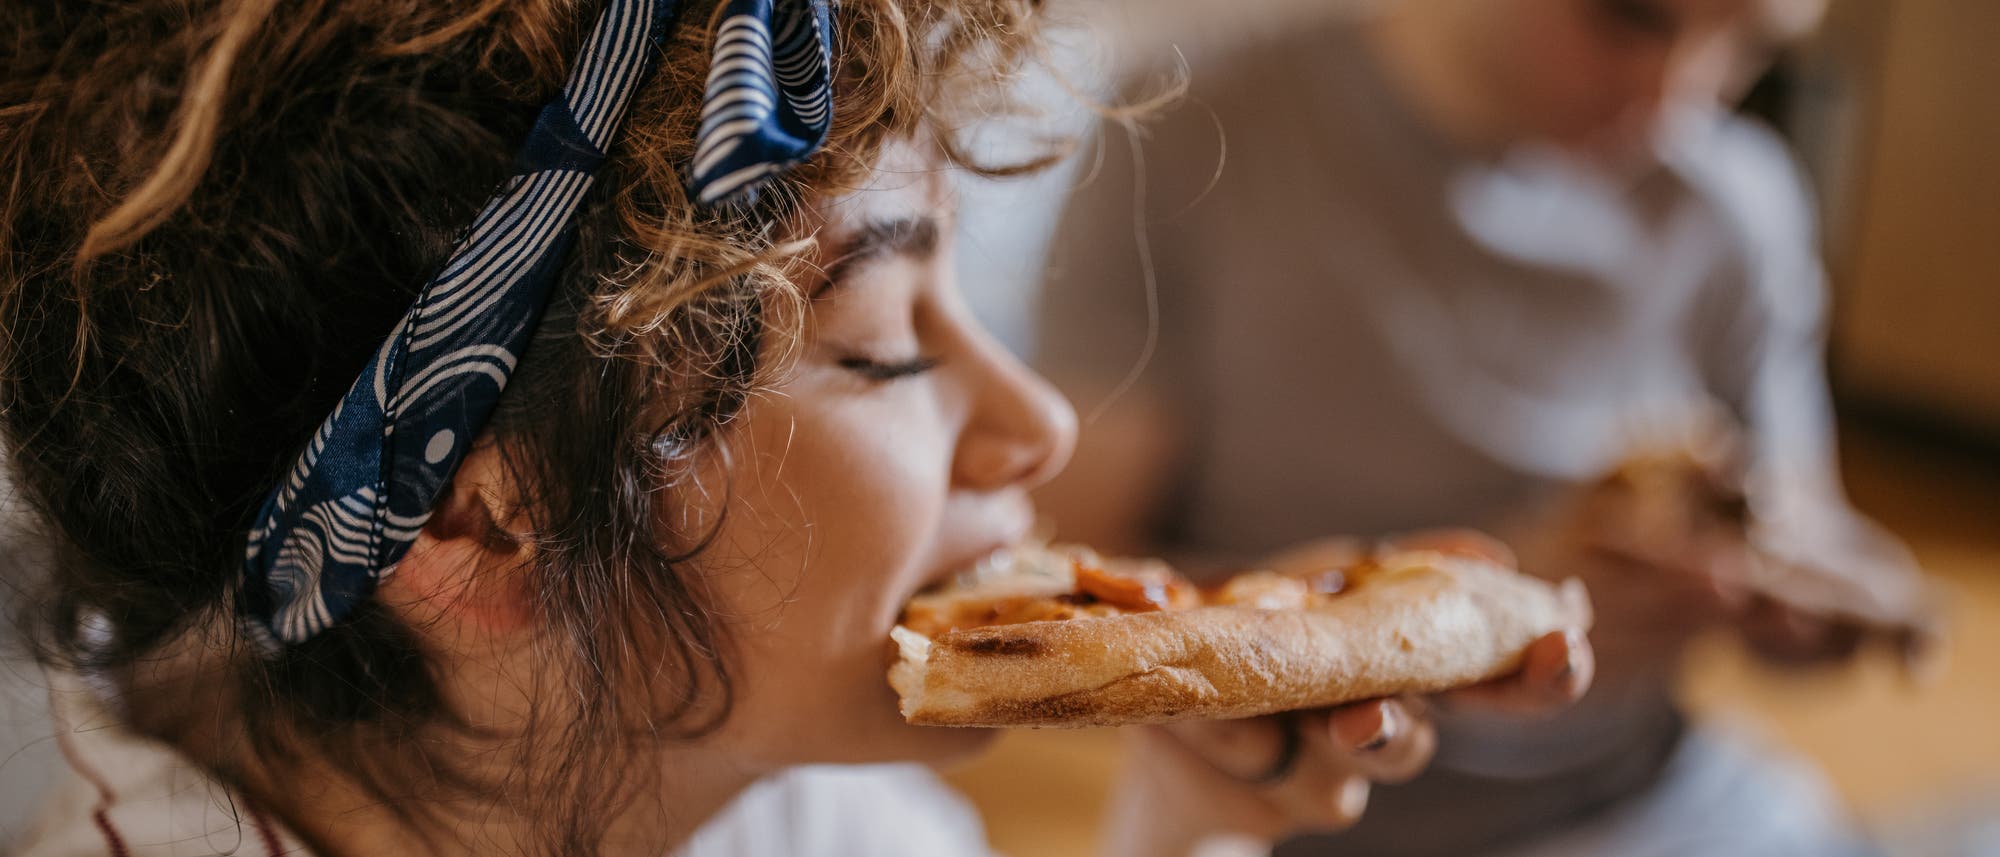 Fettiges Essen wie Pizza sollen Menschen mit hohem Cholesterinspiegel meiden, heißt es.